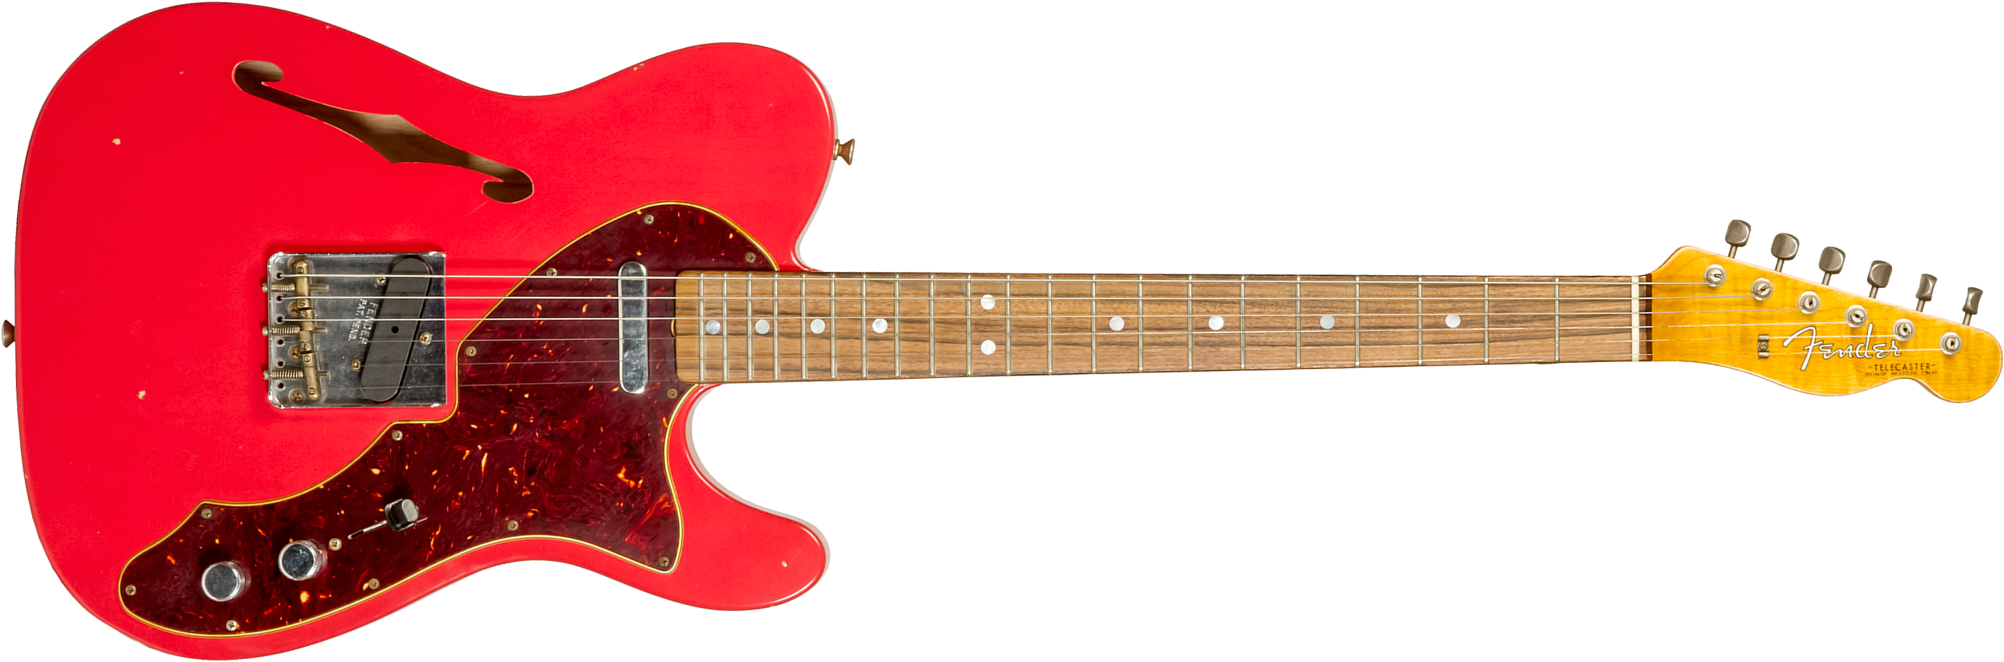 Fender Custom Shop Tele Thinline '60s Ltd 2s Ht Rw #cz544990 - Journeyman Relic Fiesta Red - Guitare Électrique 1/2 Caisse - Main picture